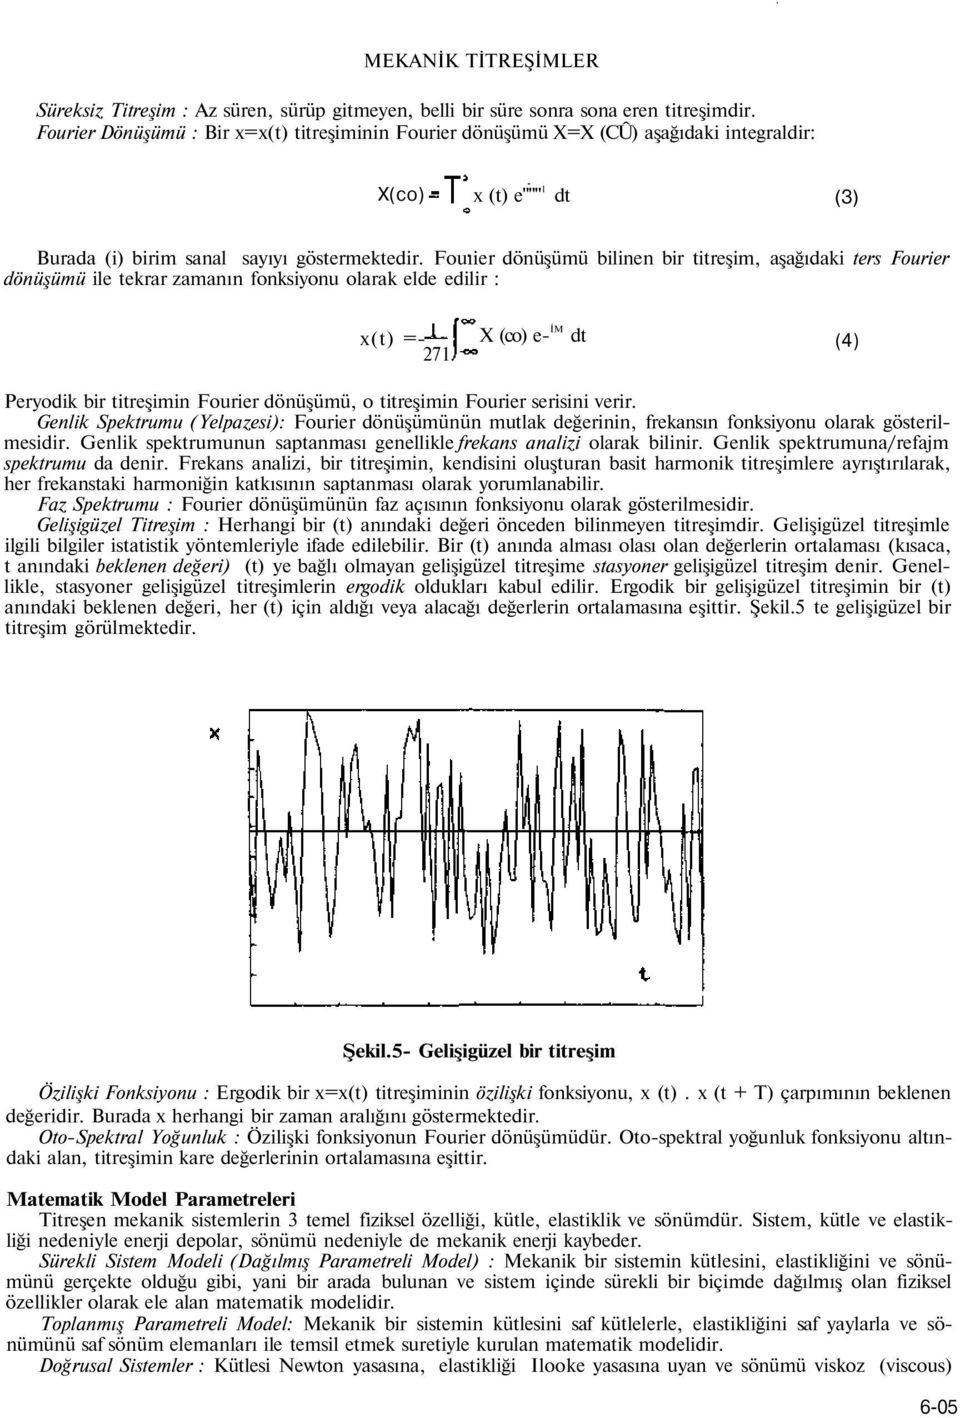 Fouıier dönüşümü bilinen bir titreşim, aşağıdaki ters Fourier dönüşümü ile tekrar zamanın fonksiyonu olarak elde edilir : x(t) =- 271.